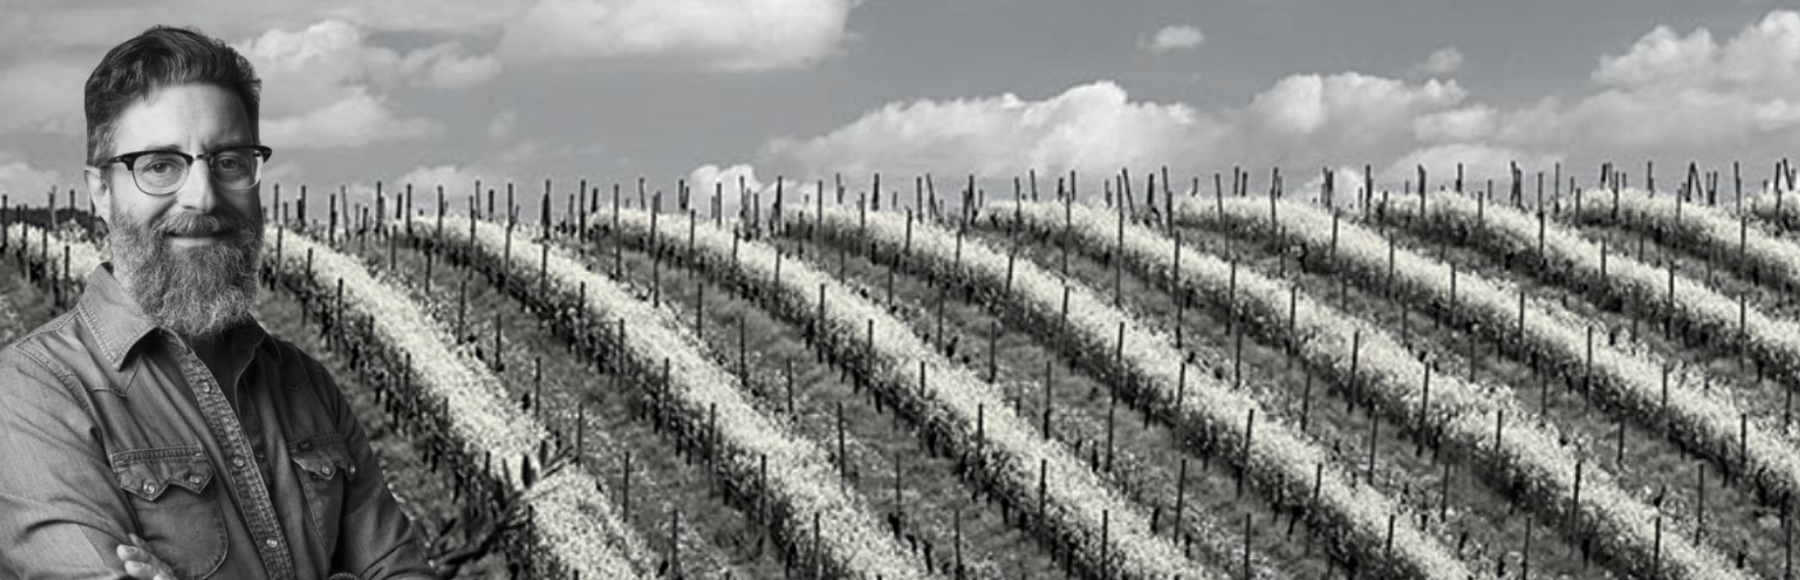 Vin naturels l'Antica Quercia - Vénétie - Italie